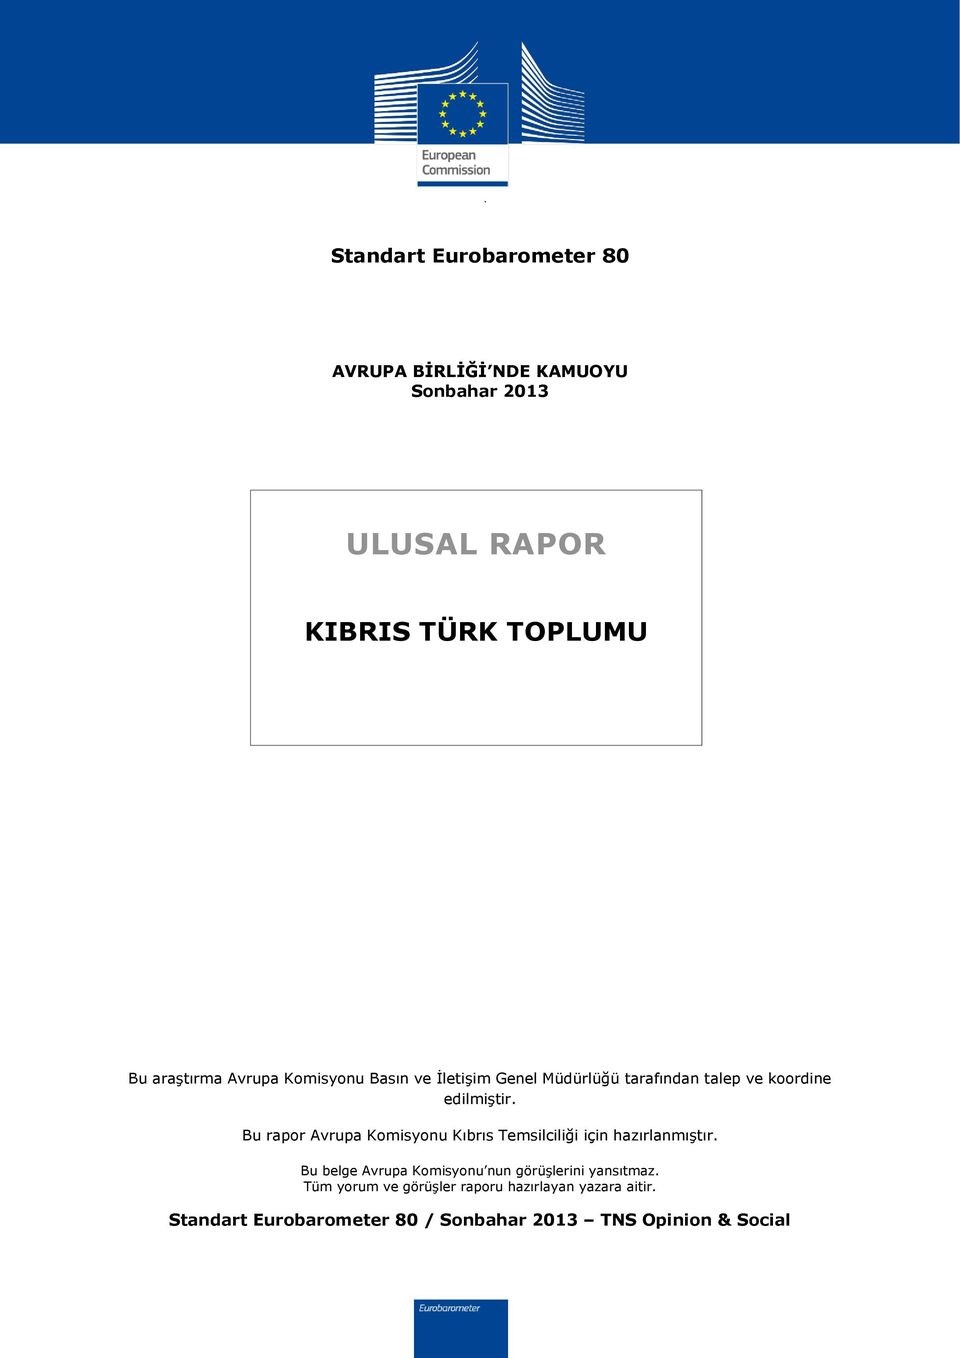 Bu rapor Avrupa Komisyonu Kıbrıs Temsilciliği için hazırlanmıştır.